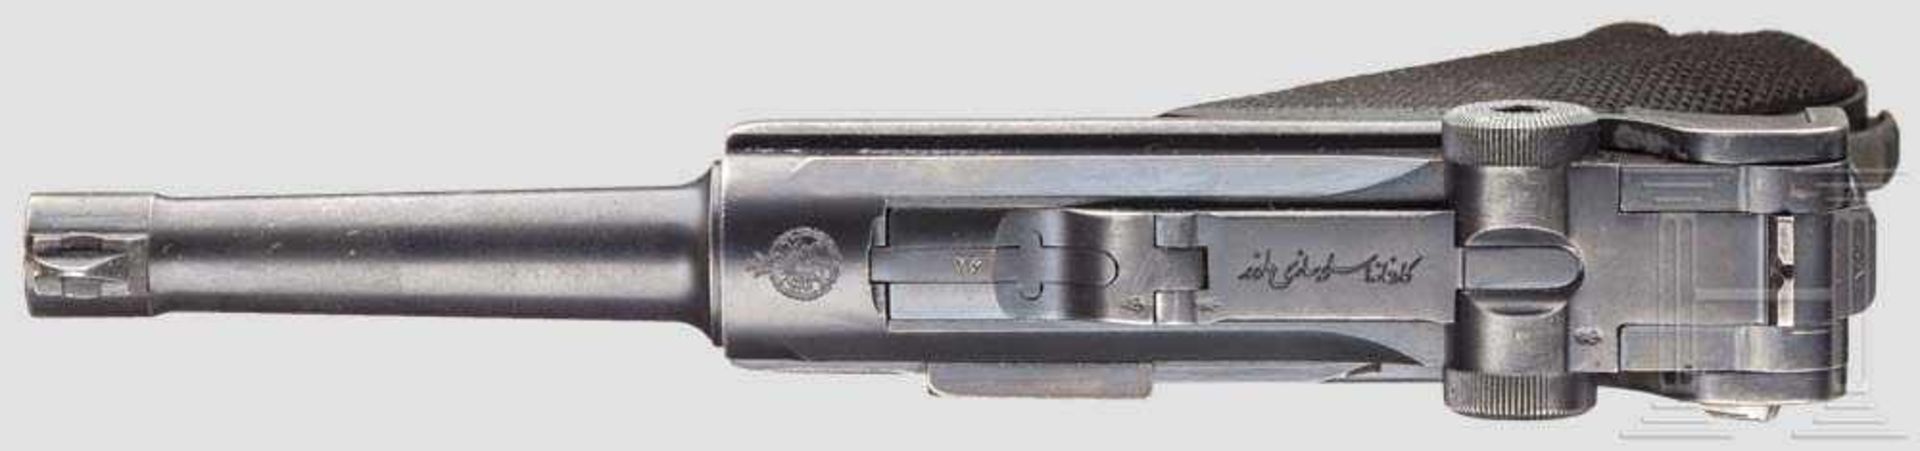 Parabellum Mauser 1935/36 Kal. 9 mm Luger, Nr. 1379 in Farsi. Nummerngleich inkl. Schlagbolzen. - Bild 3 aus 3